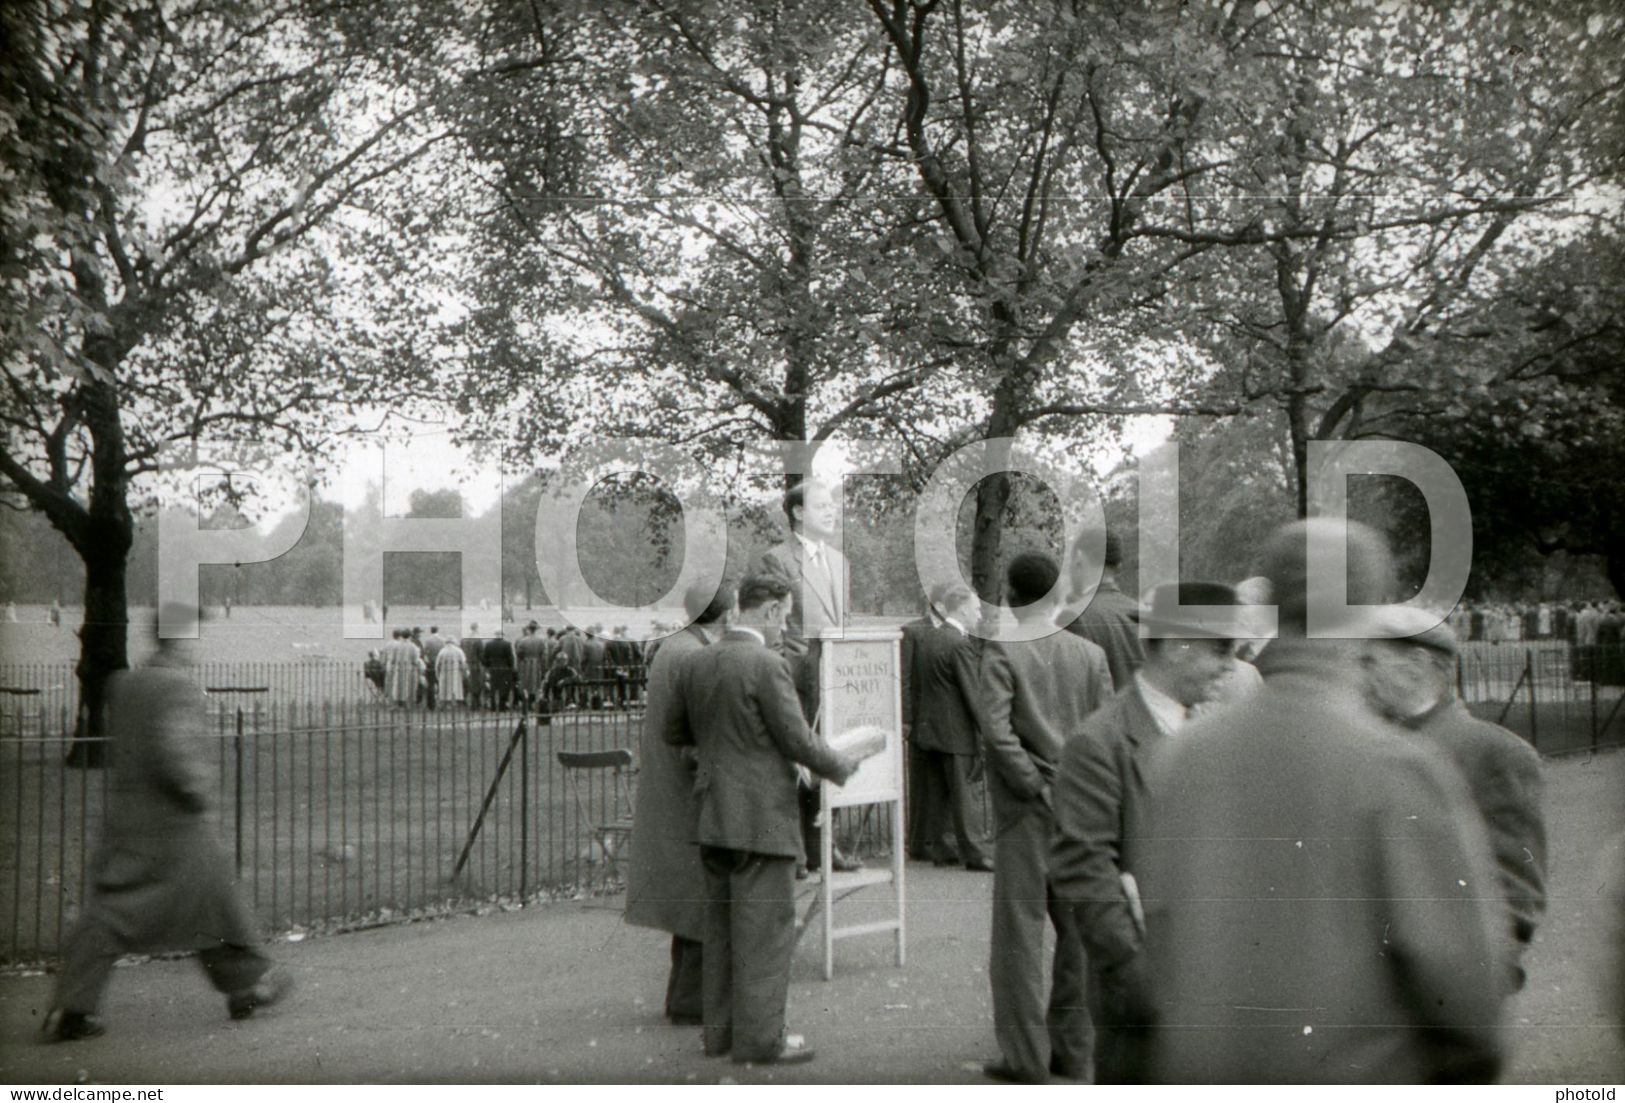 50s SOCIALIST PARTY SPEAKERS CORNER HYDE PARK LONDON ENGLAND UK 35mm AMATEUR DIAPOSITIVE SLIDE Not PHOTO No FOTO NB3936 - Diapositives